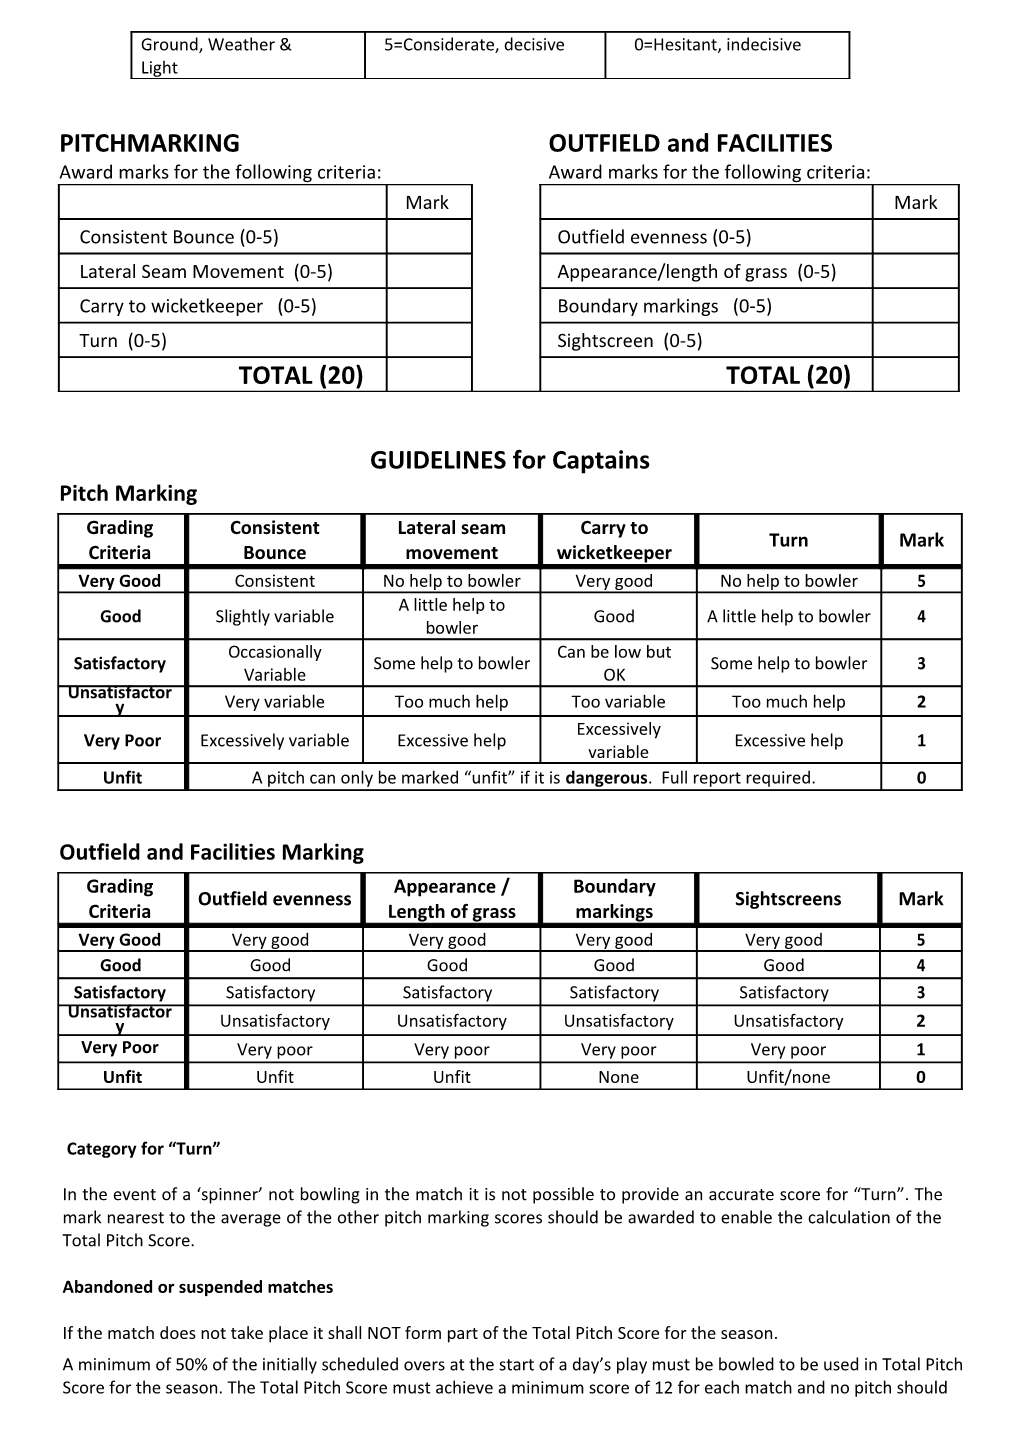 WORCESTERSHIRE COUNTY LEAGUE Captains Match Report Form 2018